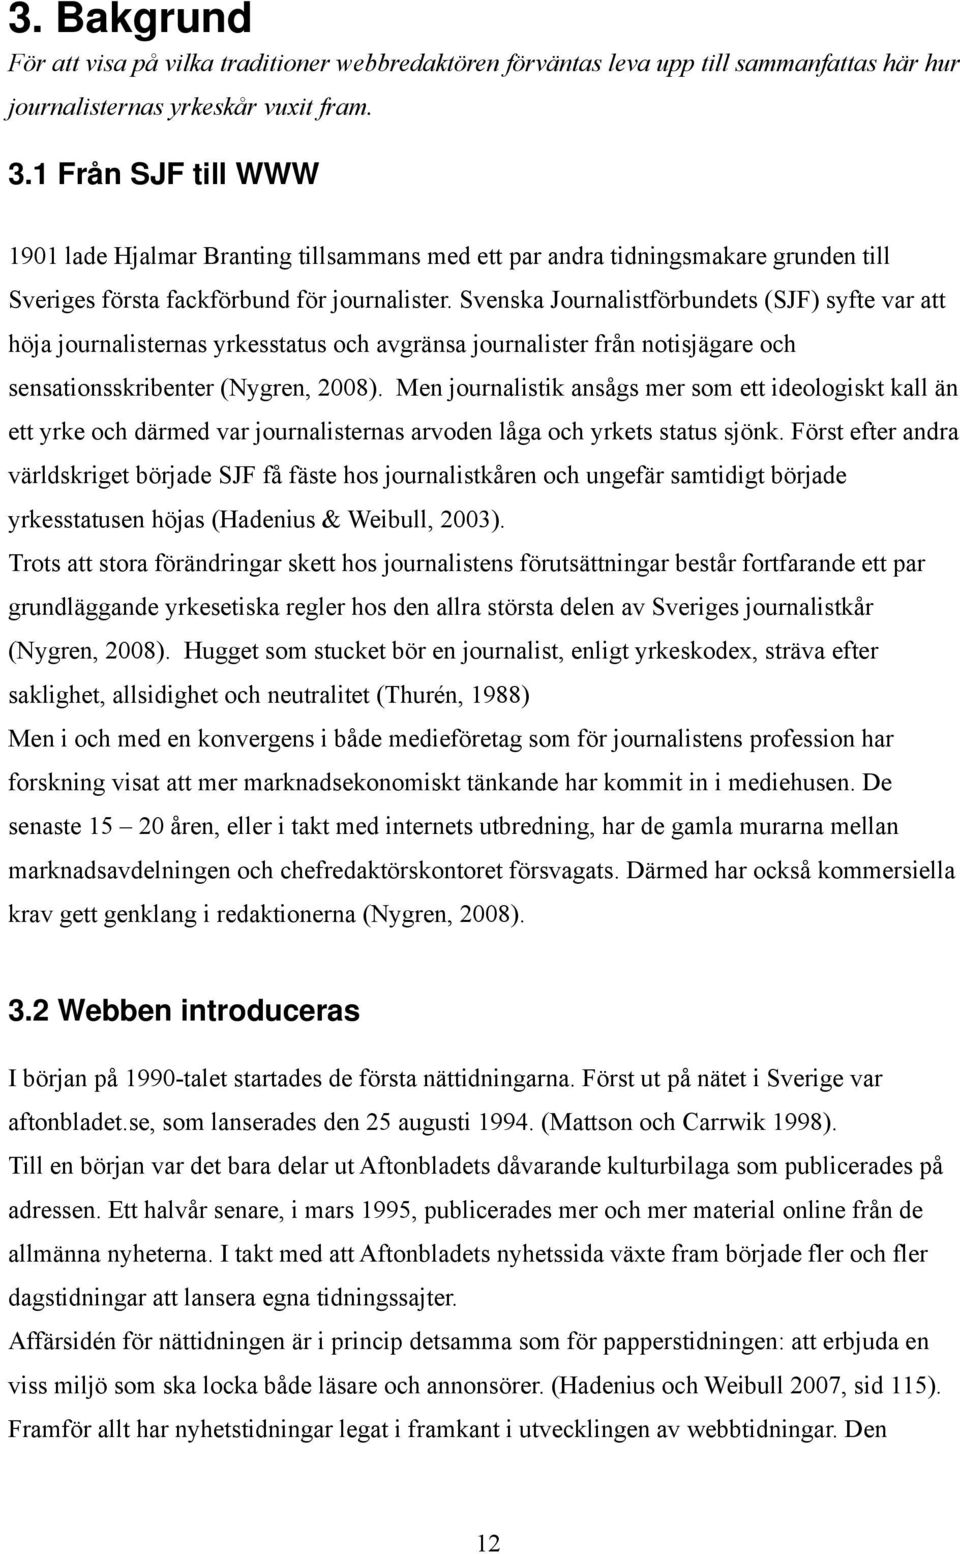 Svenska Journalistförbundets (SJF) syfte var att höja journalisternas yrkesstatus och avgränsa journalister från notisjägare och sensationsskribenter (Nygren, 2008).